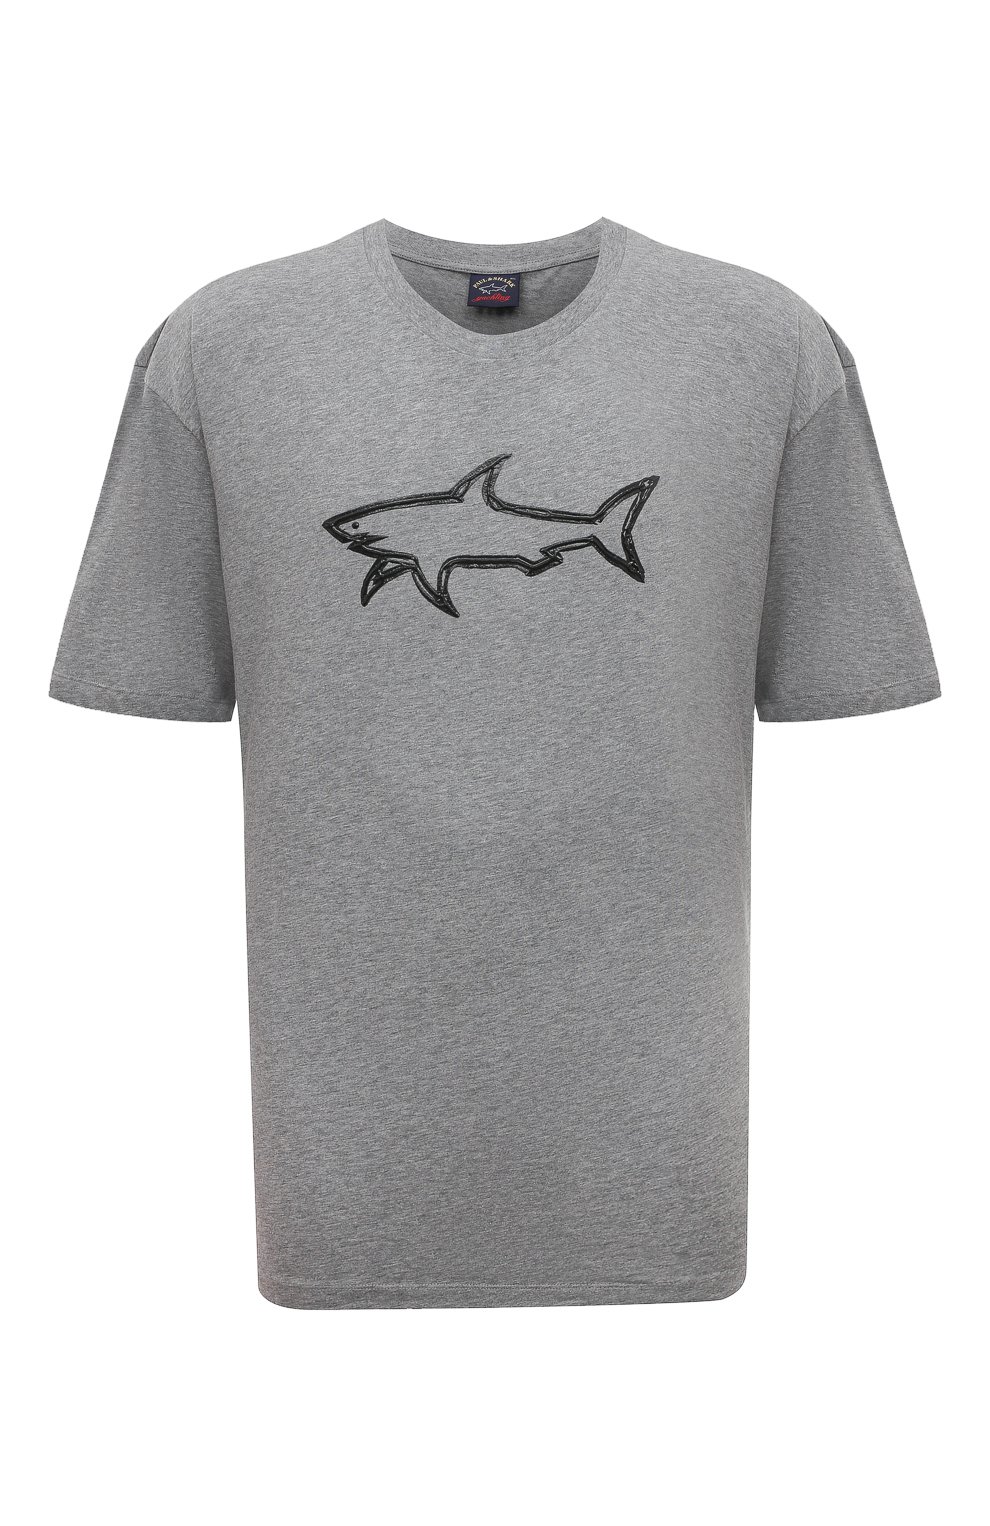 Футболки Paul&Shark, Хлопковая футболка Paul&Shark, Турция, Серый, Хлопок: 100%;, 13381599  - купить